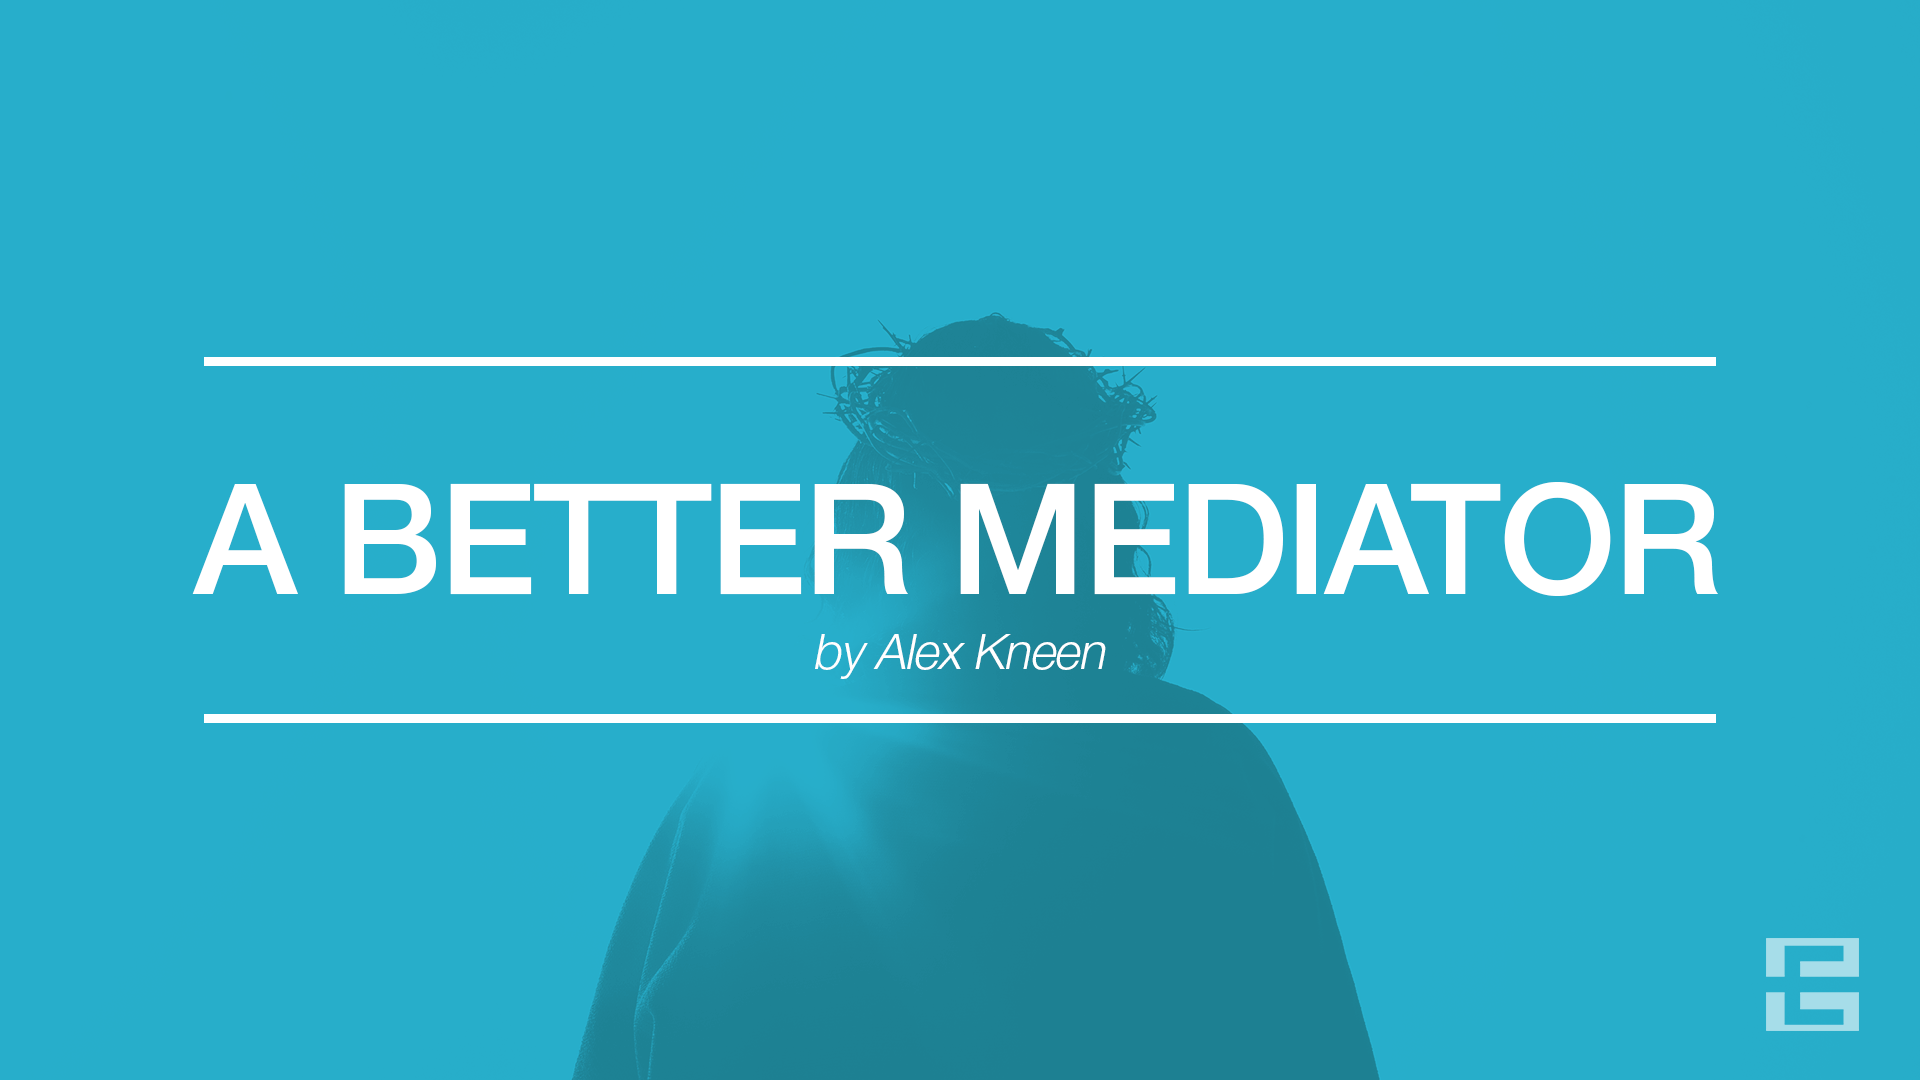 A Better Mediator